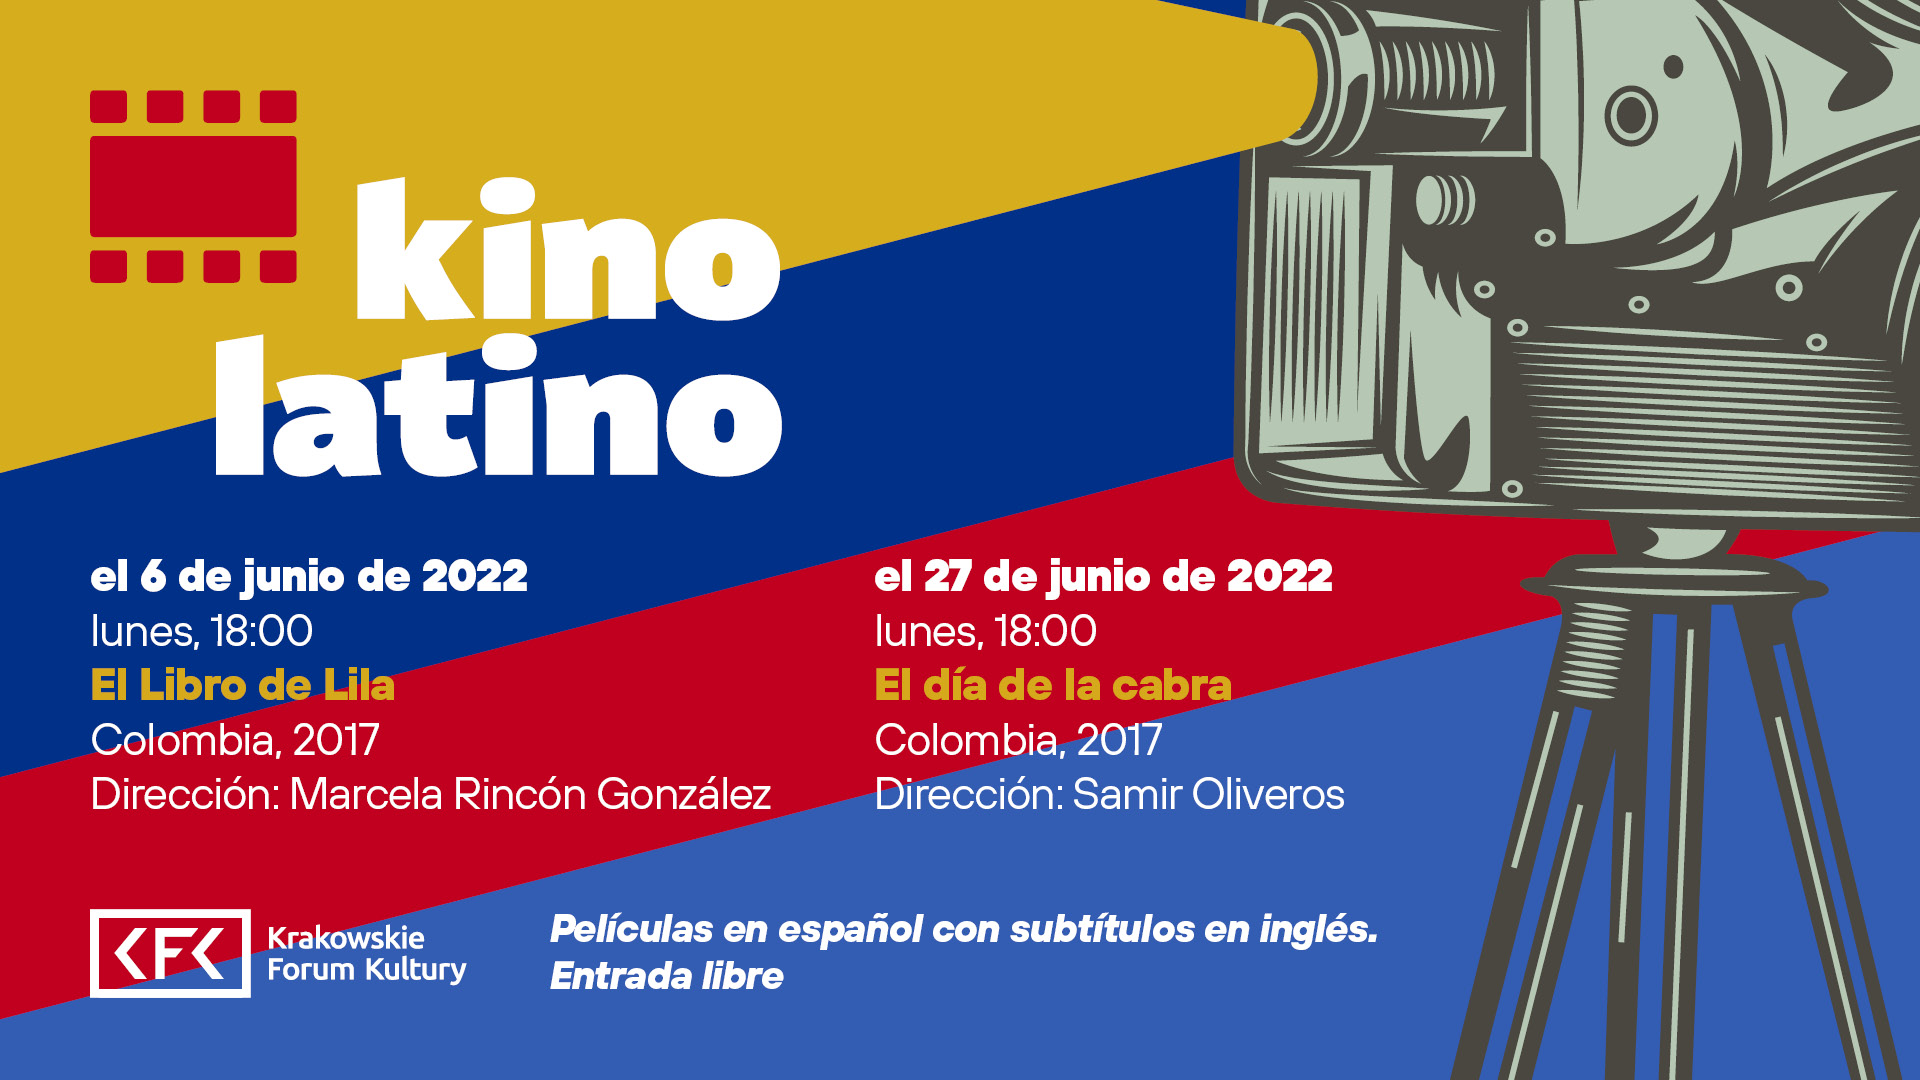 kfk2022 kino latino wm 6 6 - Kino Latino: El Libro de Lila